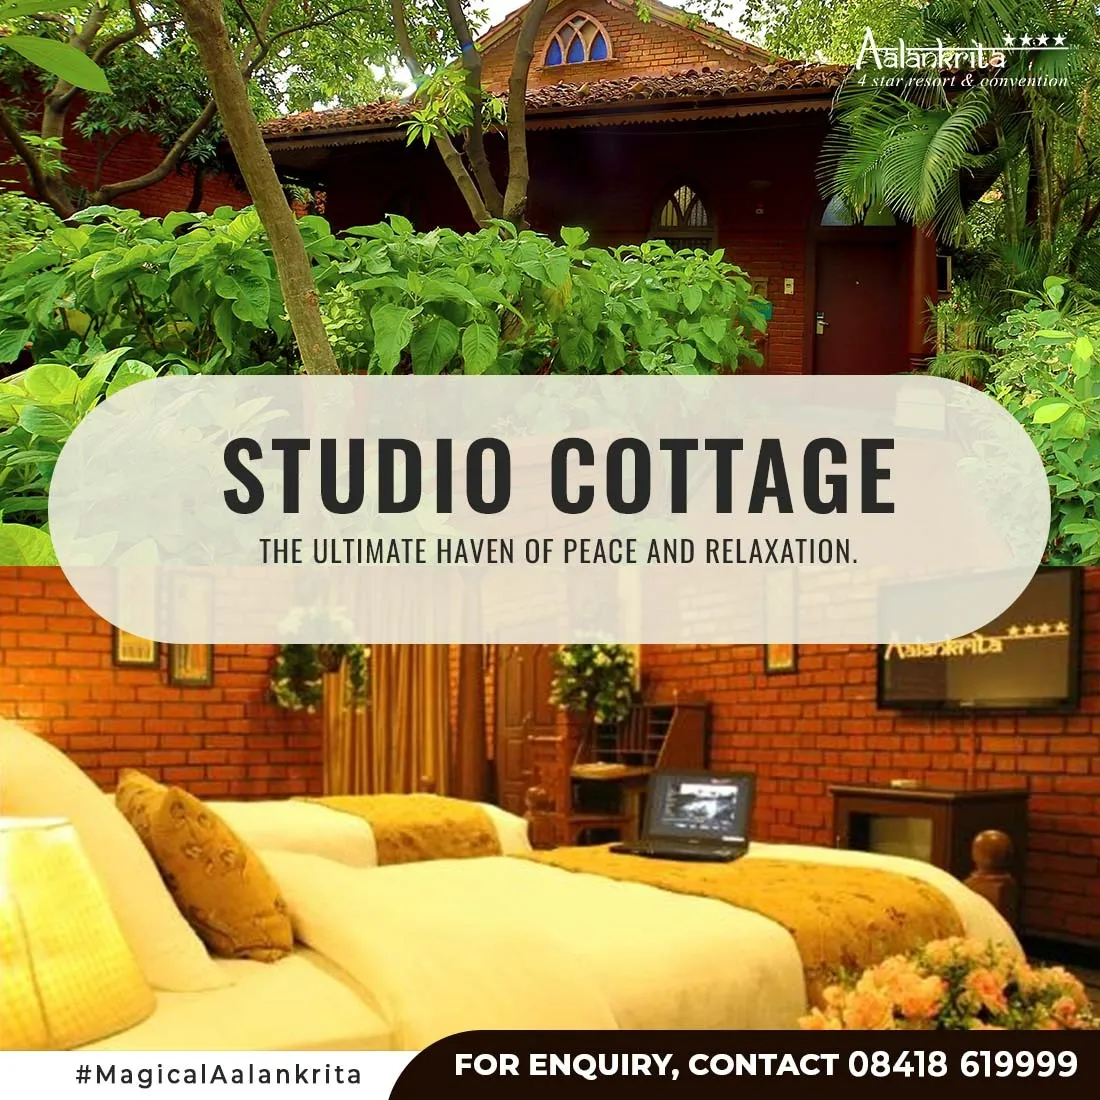 Alankrita Resort Studio Cottage